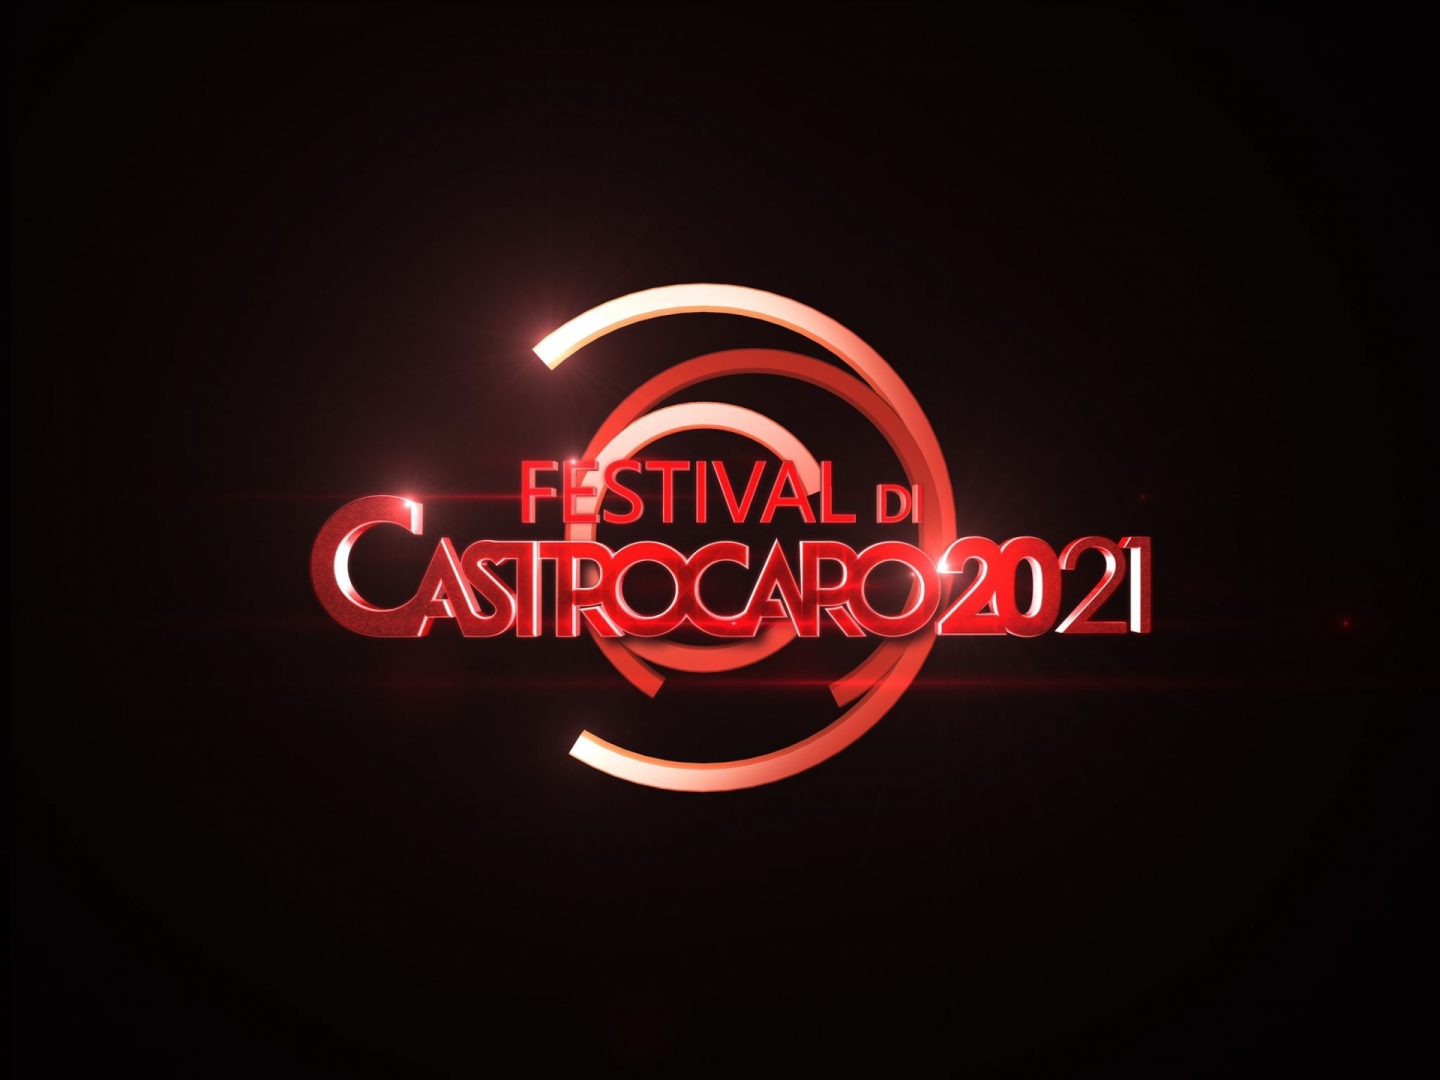 Castrocaro 2021